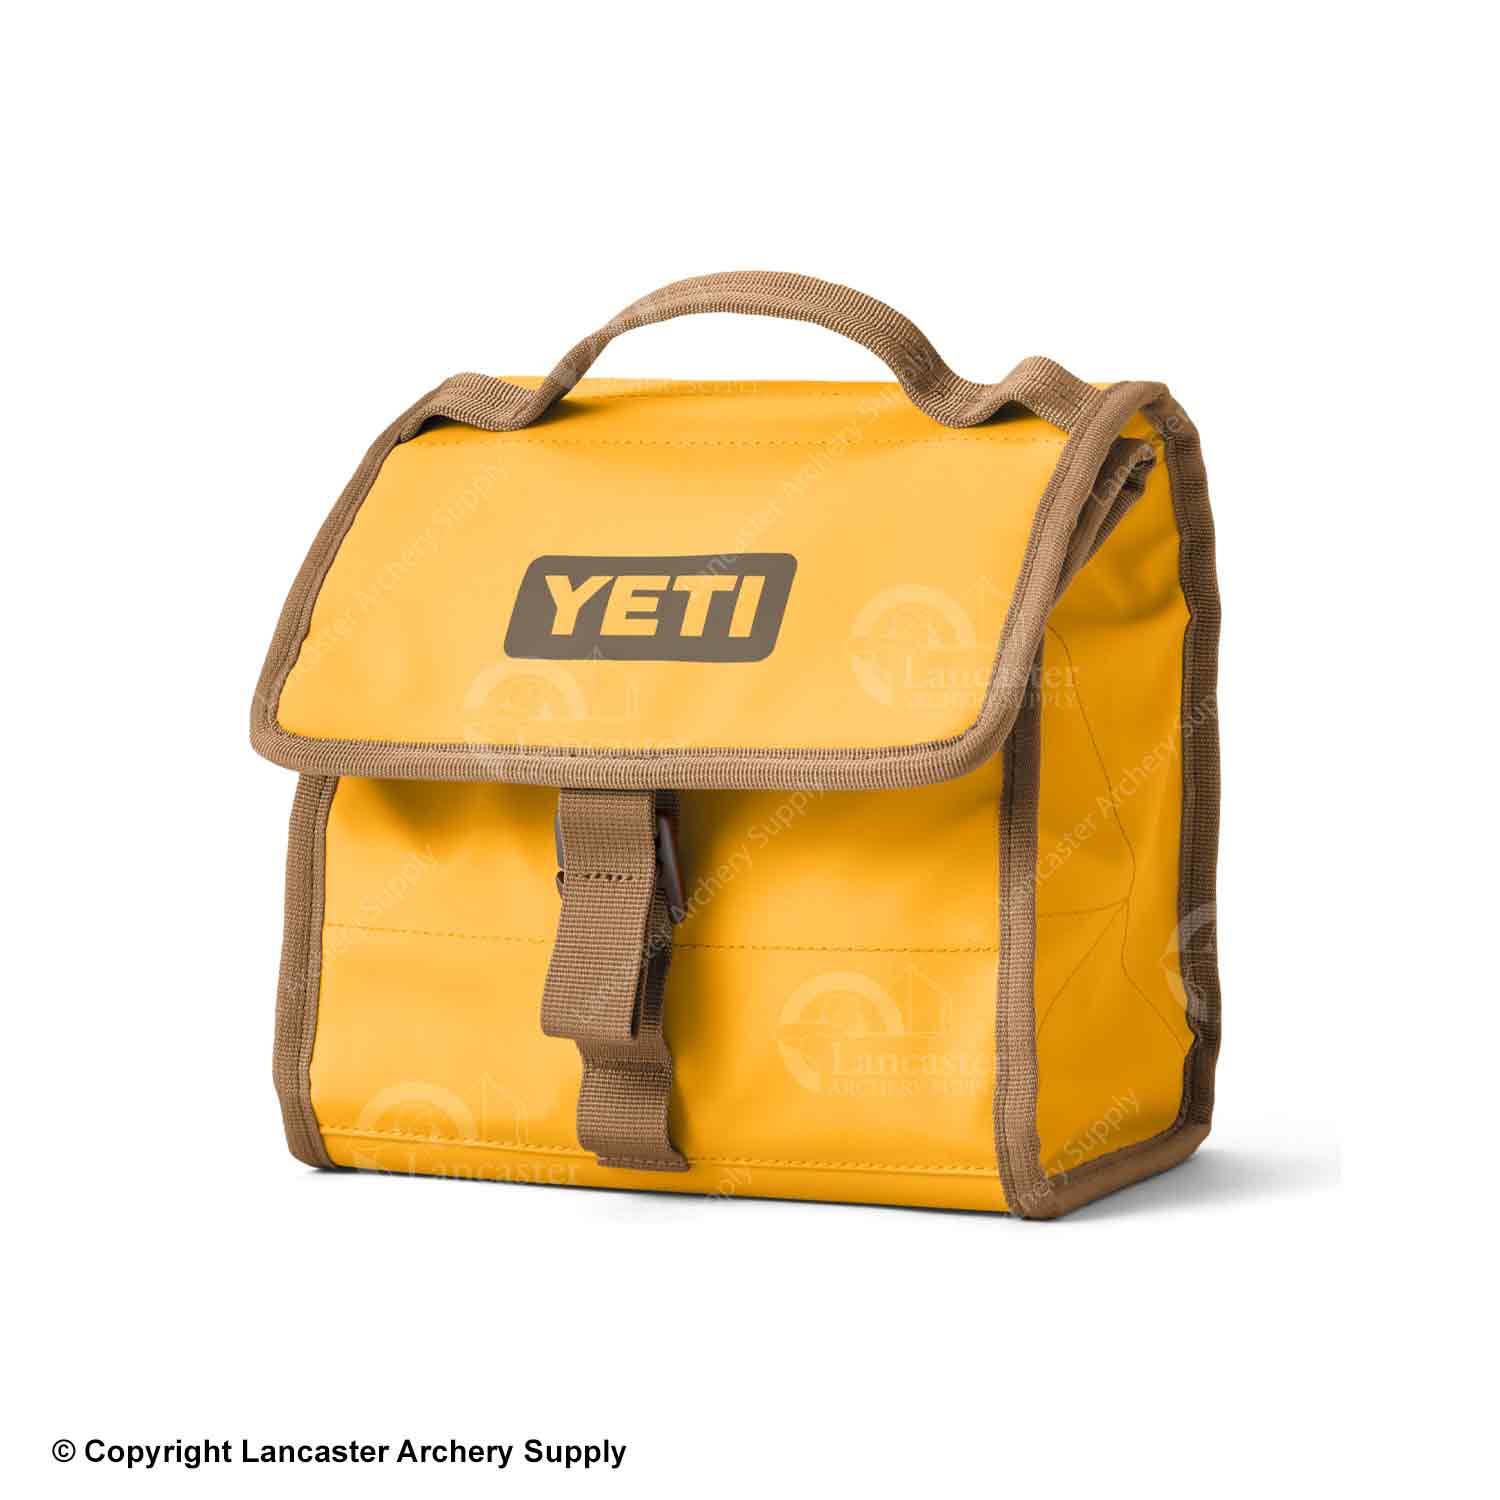 YETI Daytrip Lunch Bag (Limited Edition Alpine Yellow)